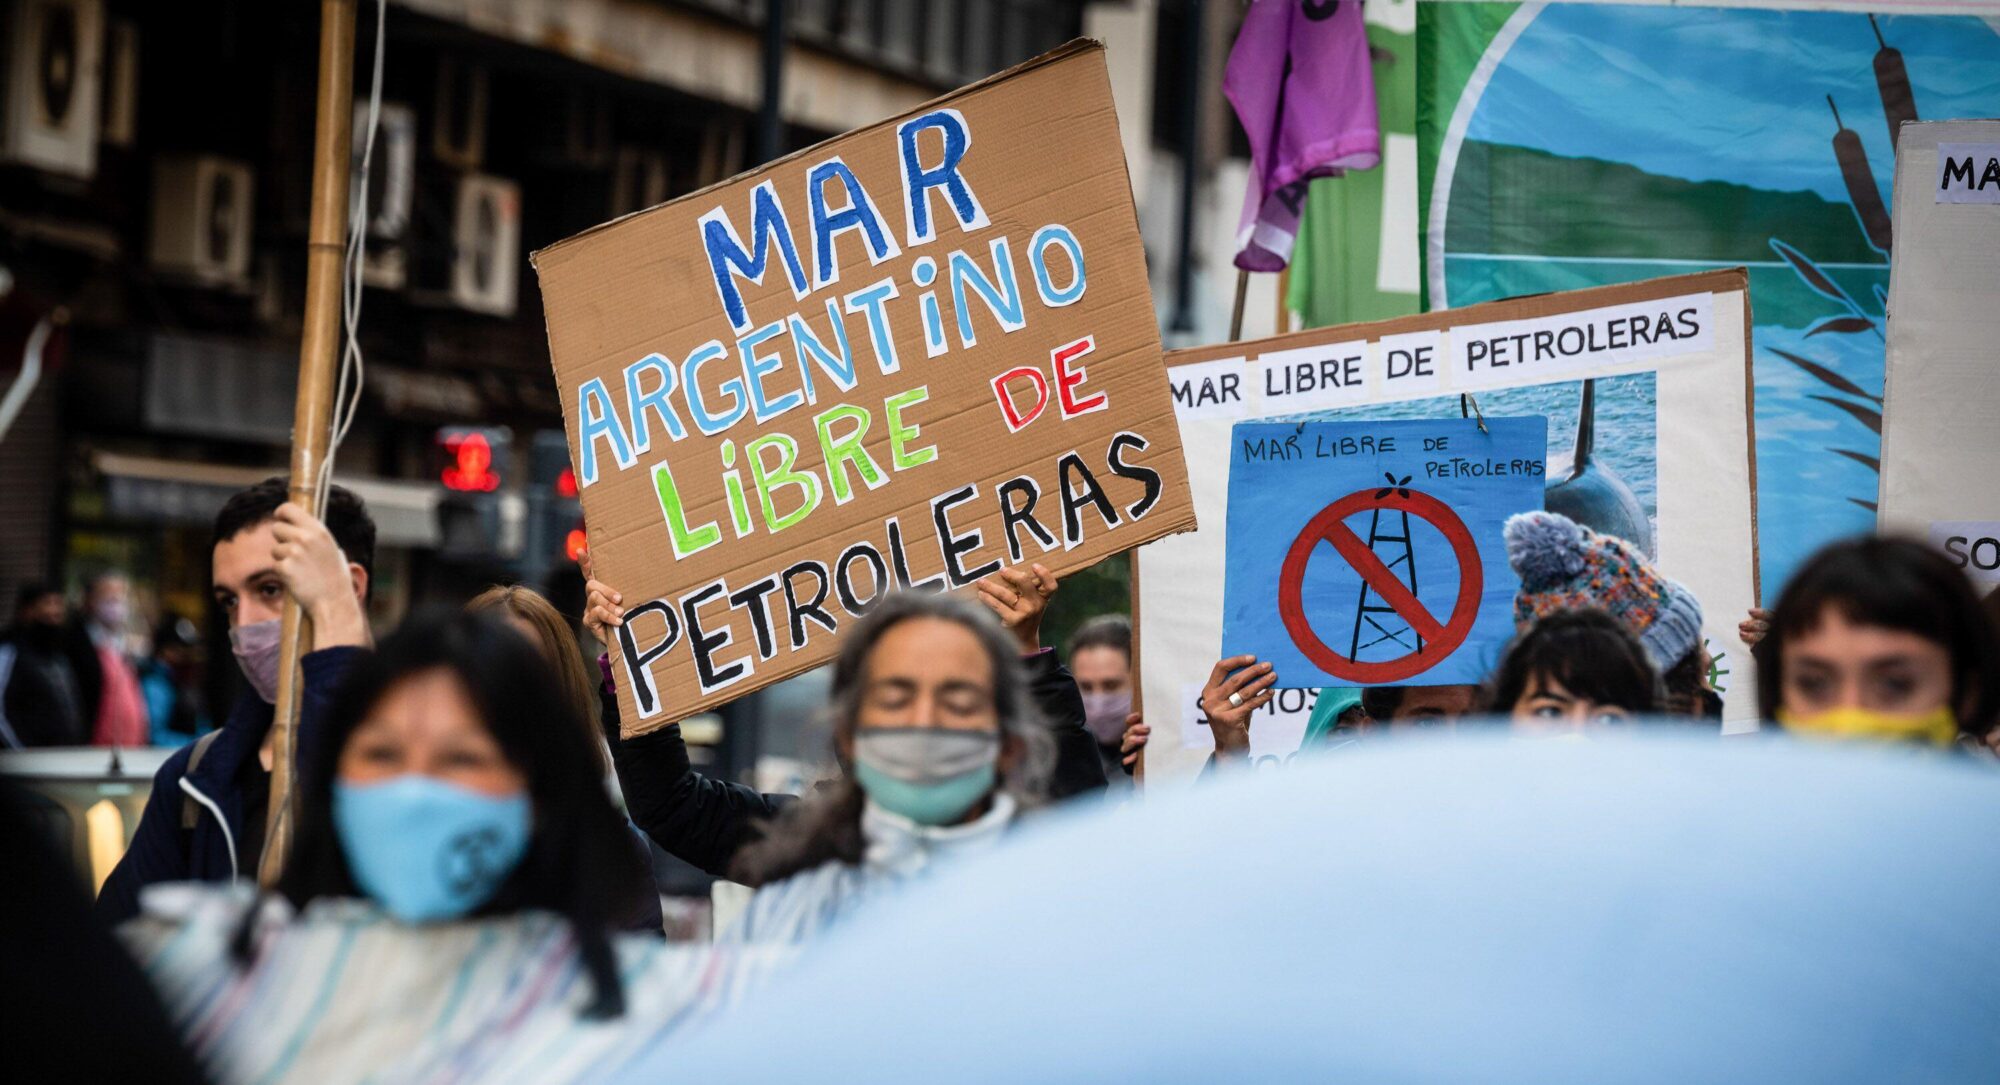 Manifestantes sostienen pancartas pidiendo un “Mar Argentino libre de petroleras”, en una marcha